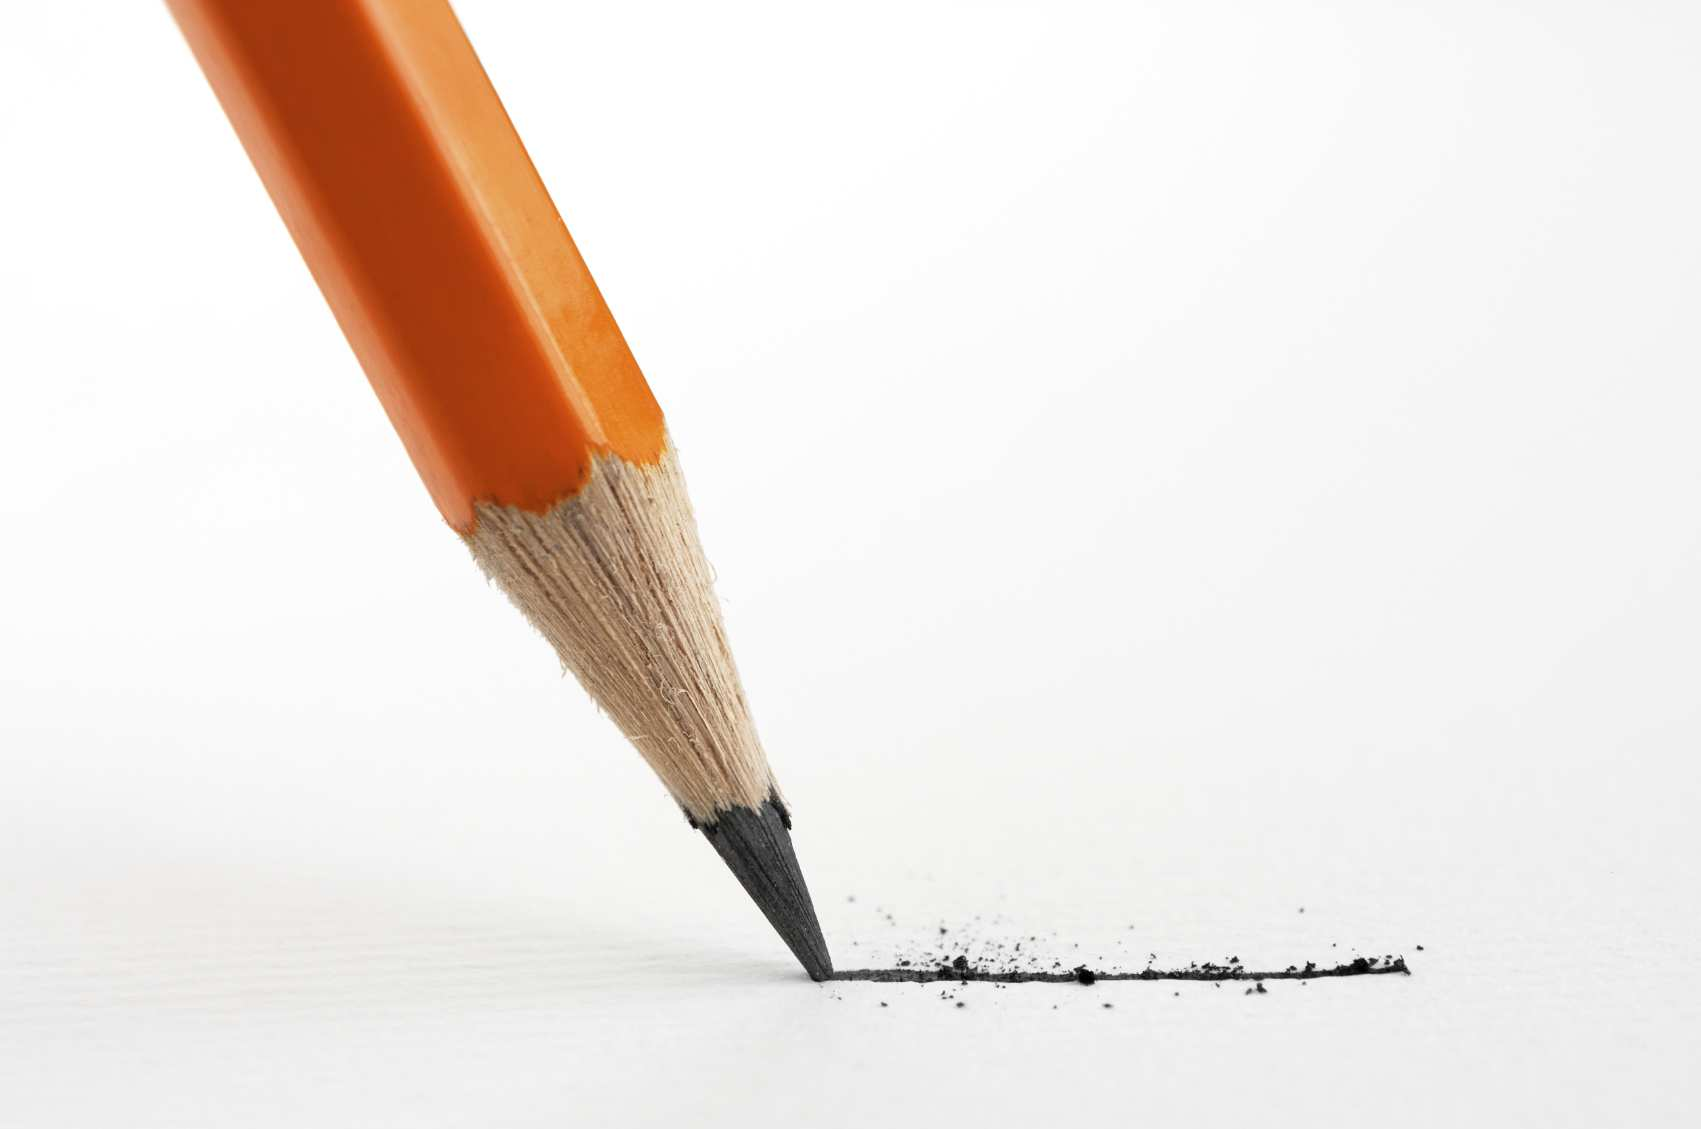 Ten derde: Als je met het potlood schrijft, kun je altijd uitgummen wat je schreef.